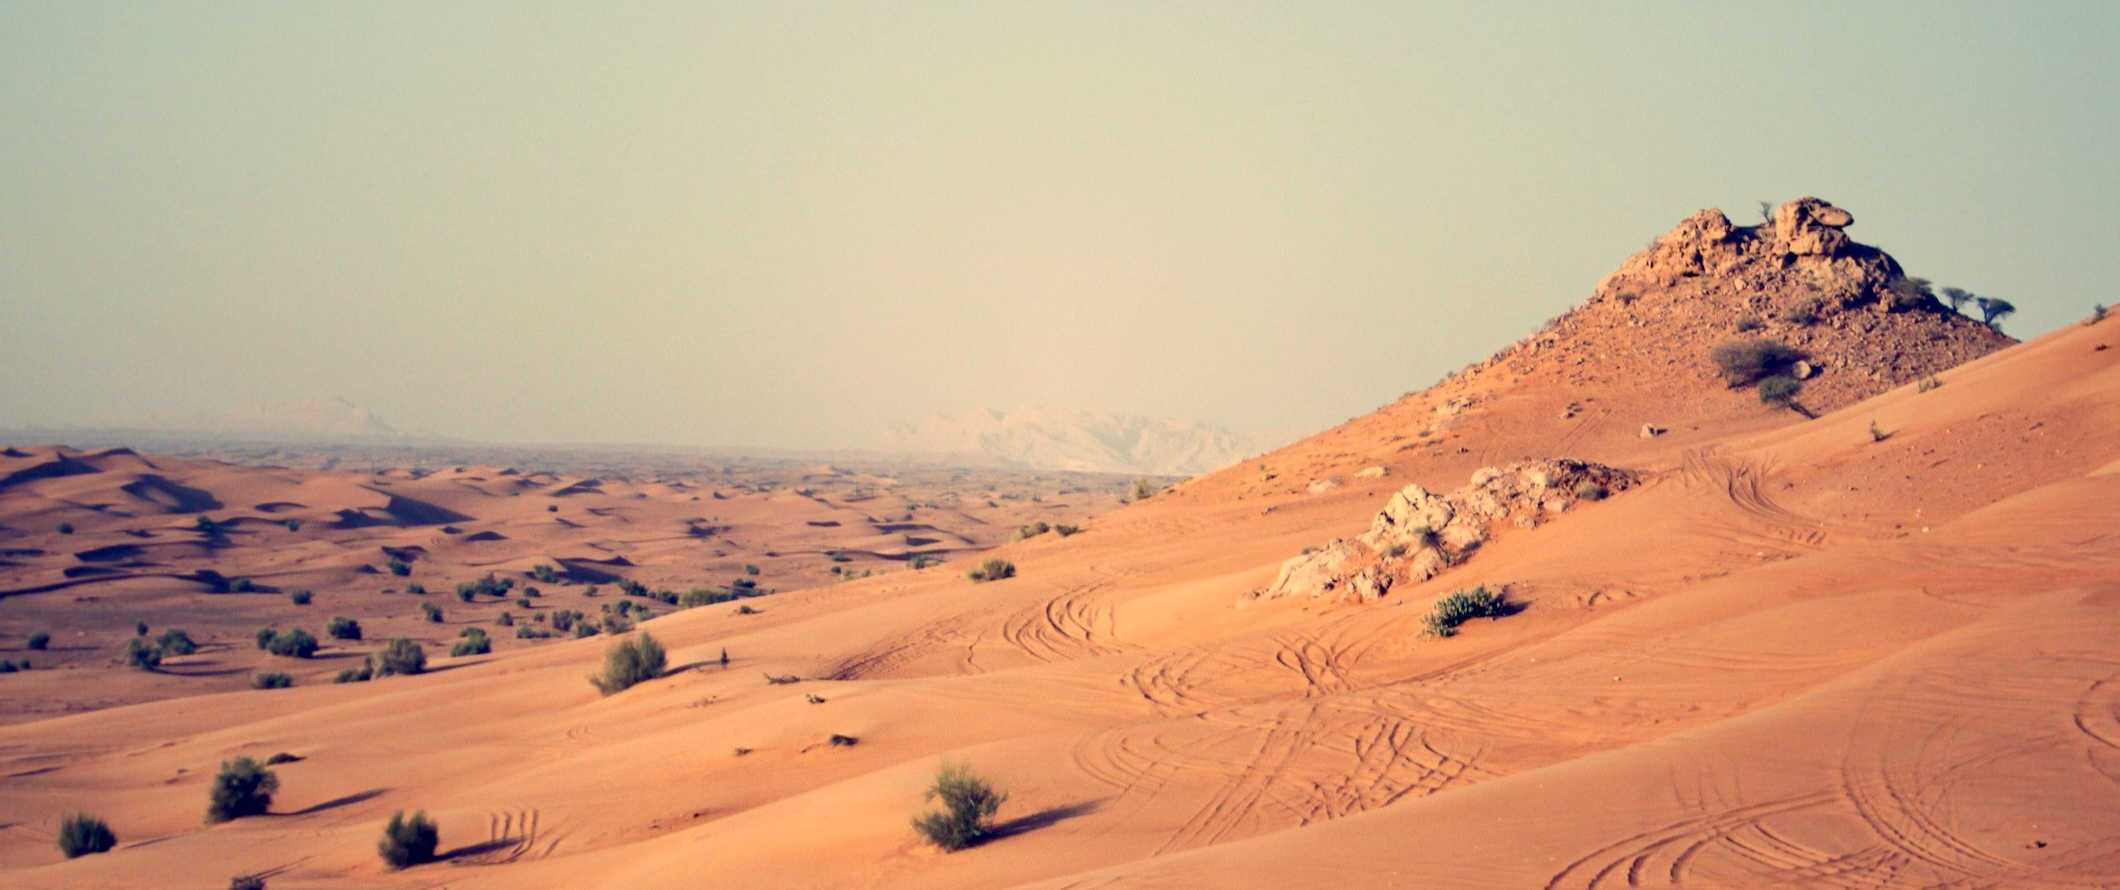 Areias espalhadas e dunas de Dubai, saindo para a distância árida